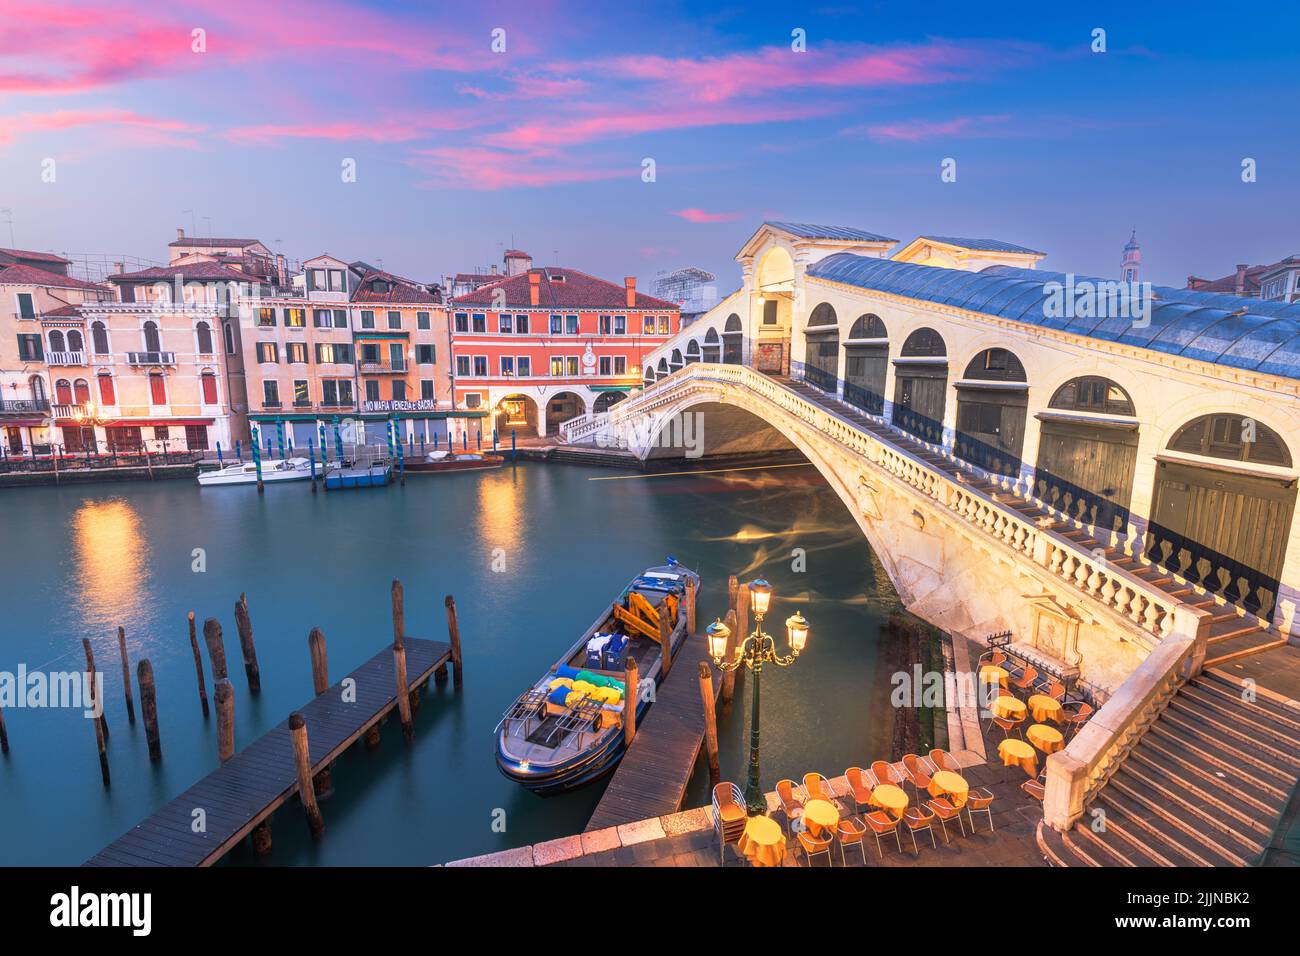 Venise, Italie au pont du Rialto, au crépuscule, sur le Grand Canal. (La lecture du signe en italien 'No Mafia Venezia e Sacra' traduit en anglais par 'No Banque D'Images